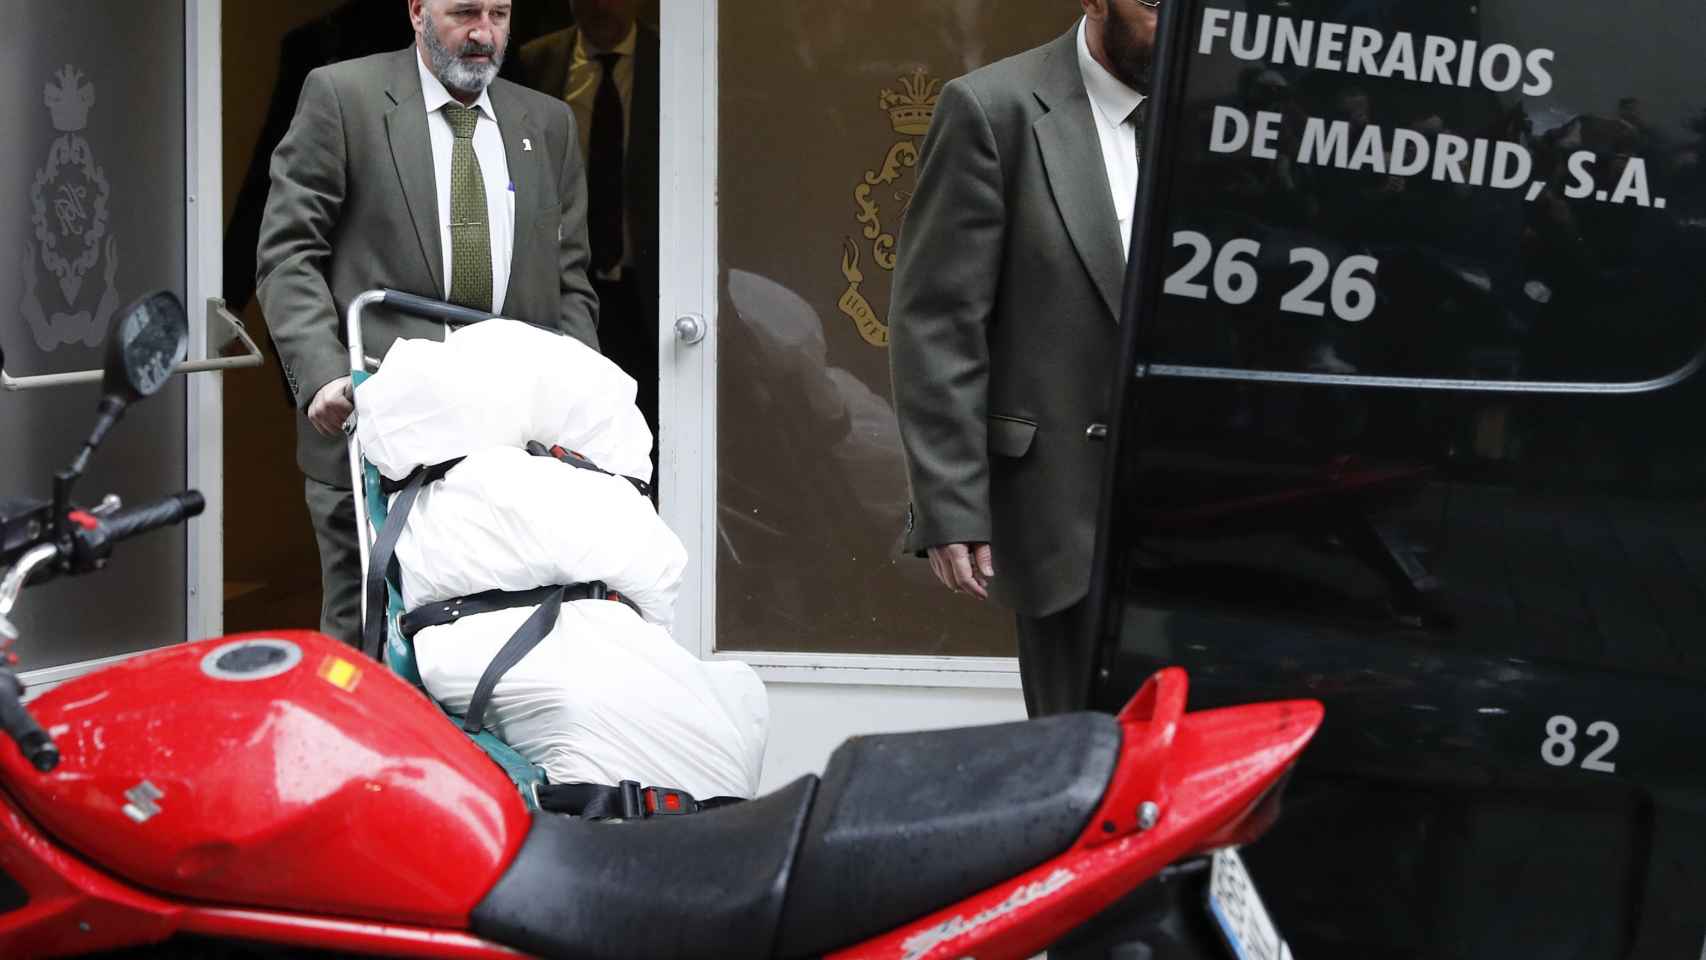 Operarios trasladan el cadáver de Rita Barberá en un hotel de Madrid.